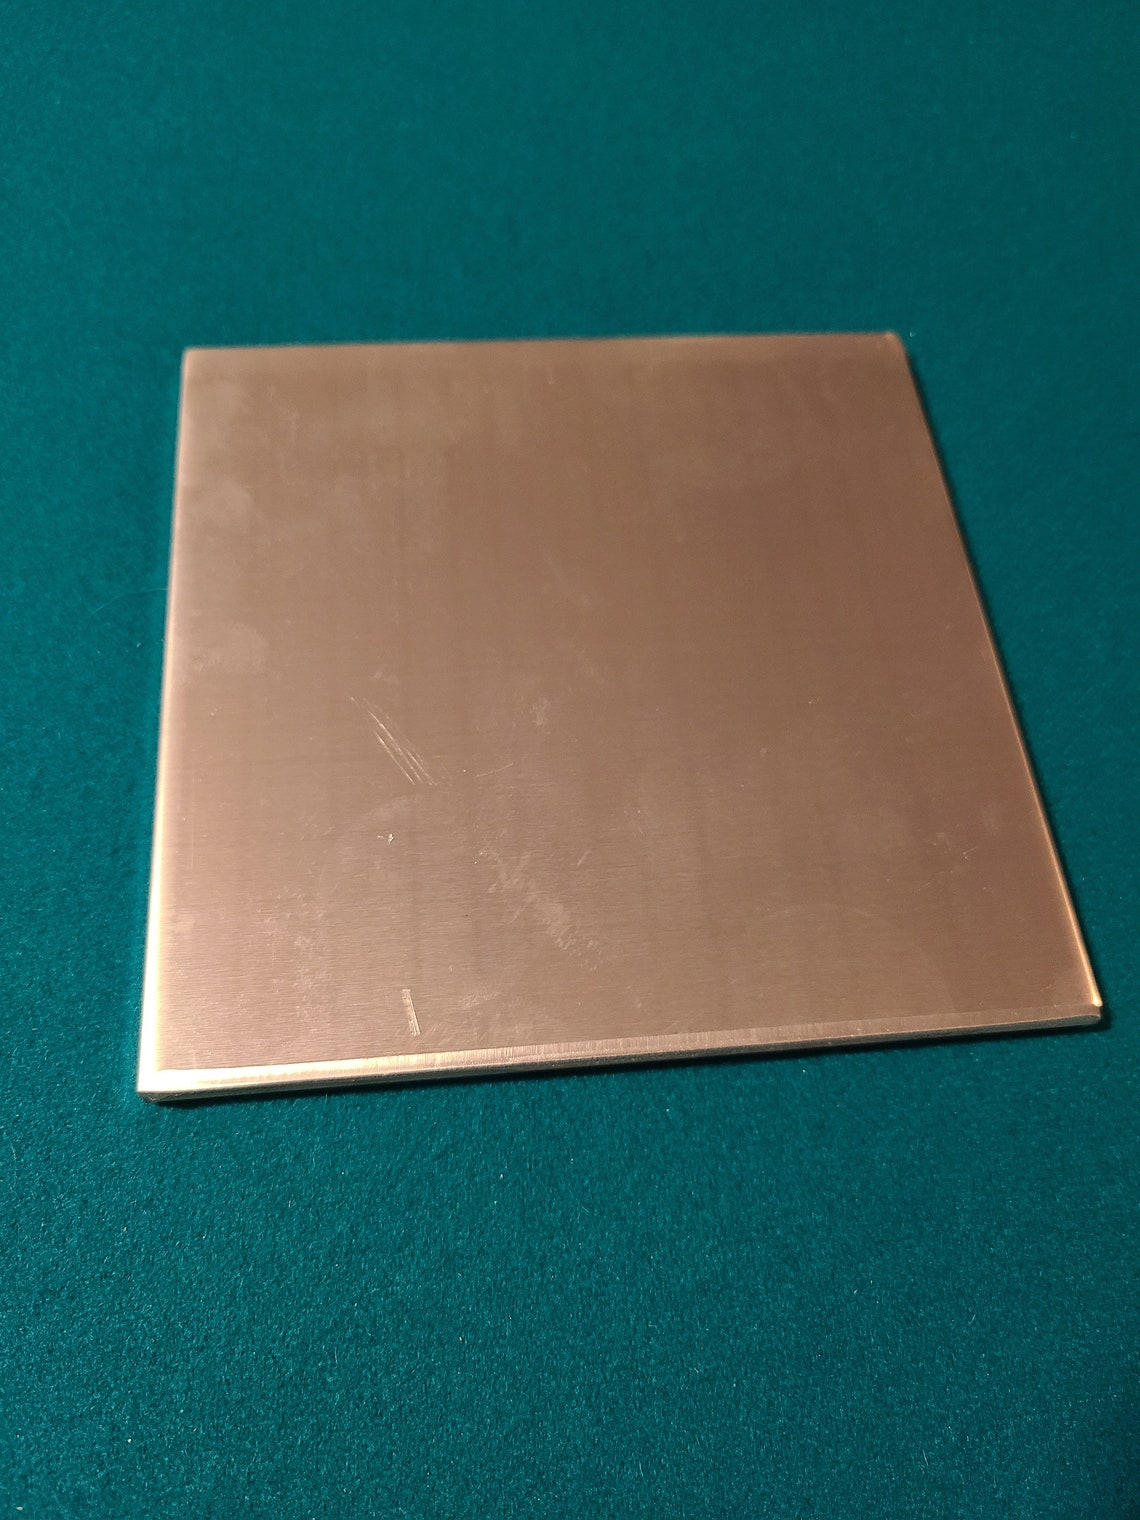 1/16 Aluminum 18x24 sheet metal plate 5052 Aluminum flat bar Etsy